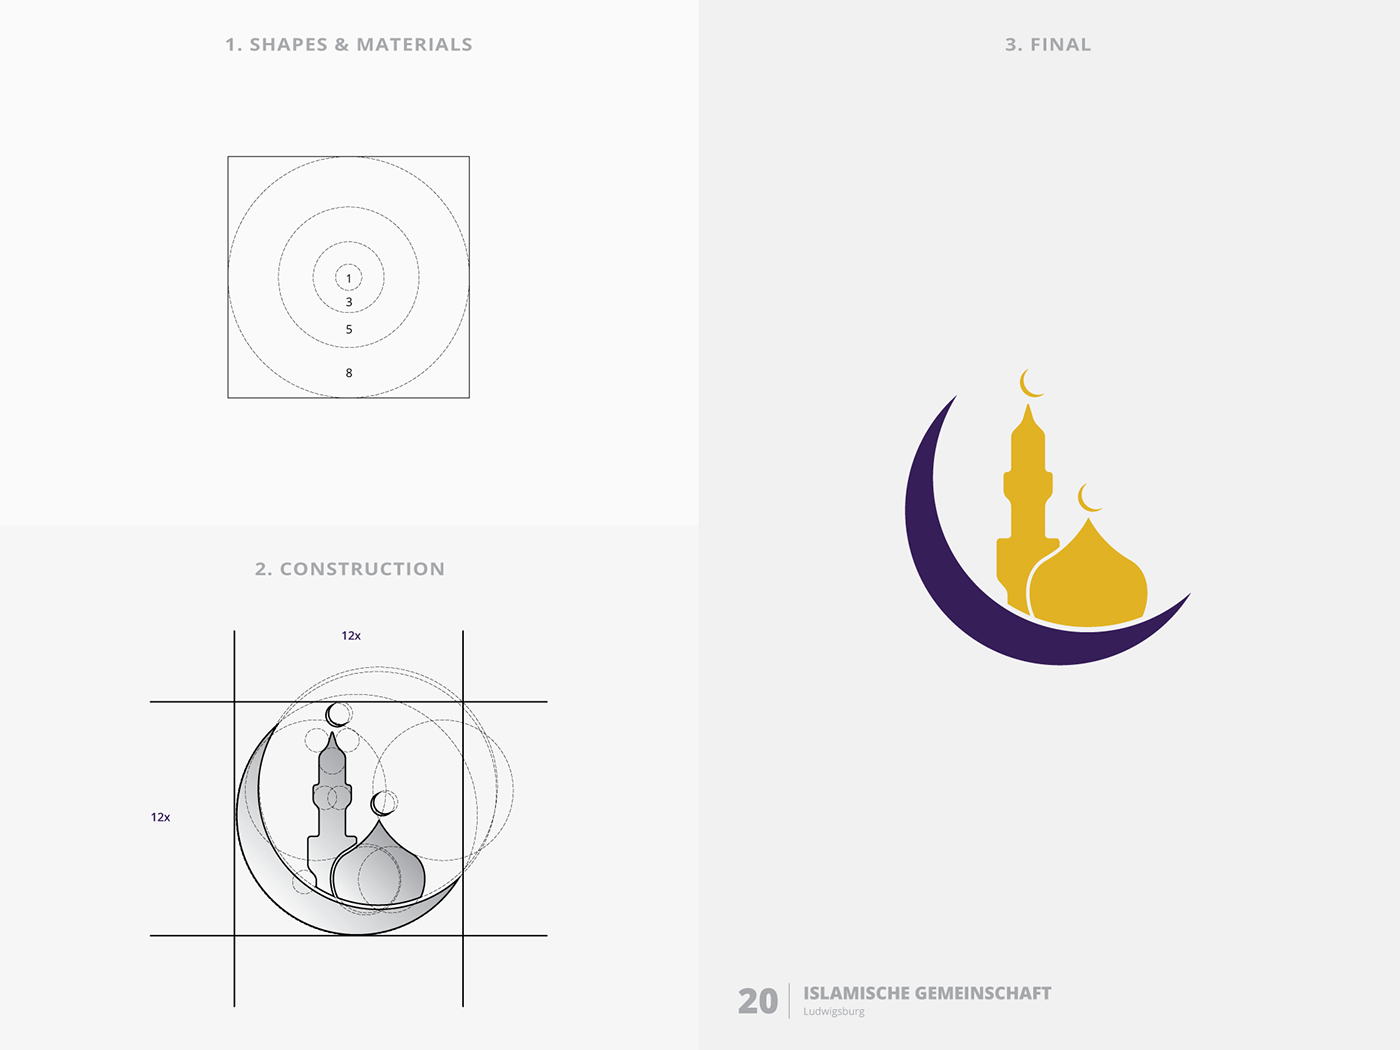 logo logofolio Logotype logo collection challenge logo challenge Golden Ratio logos Logos And Marks branding 